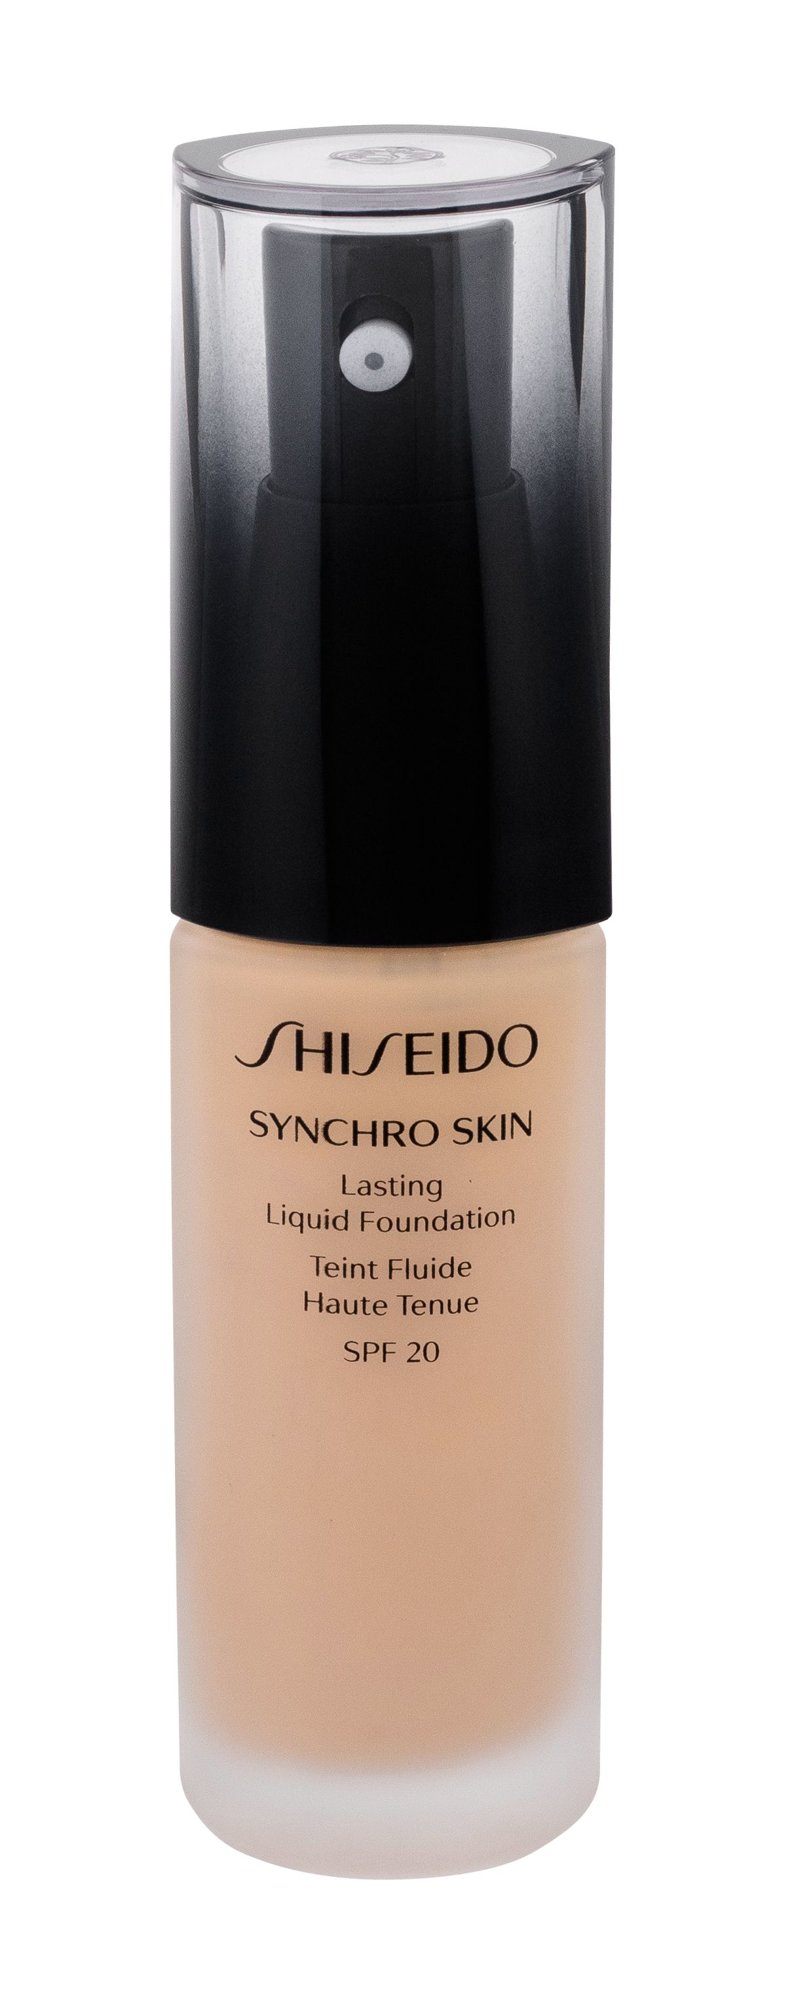 Shiseido Synchro Skin Lasting Liquid Foundation 30ml makiažo pagrindas